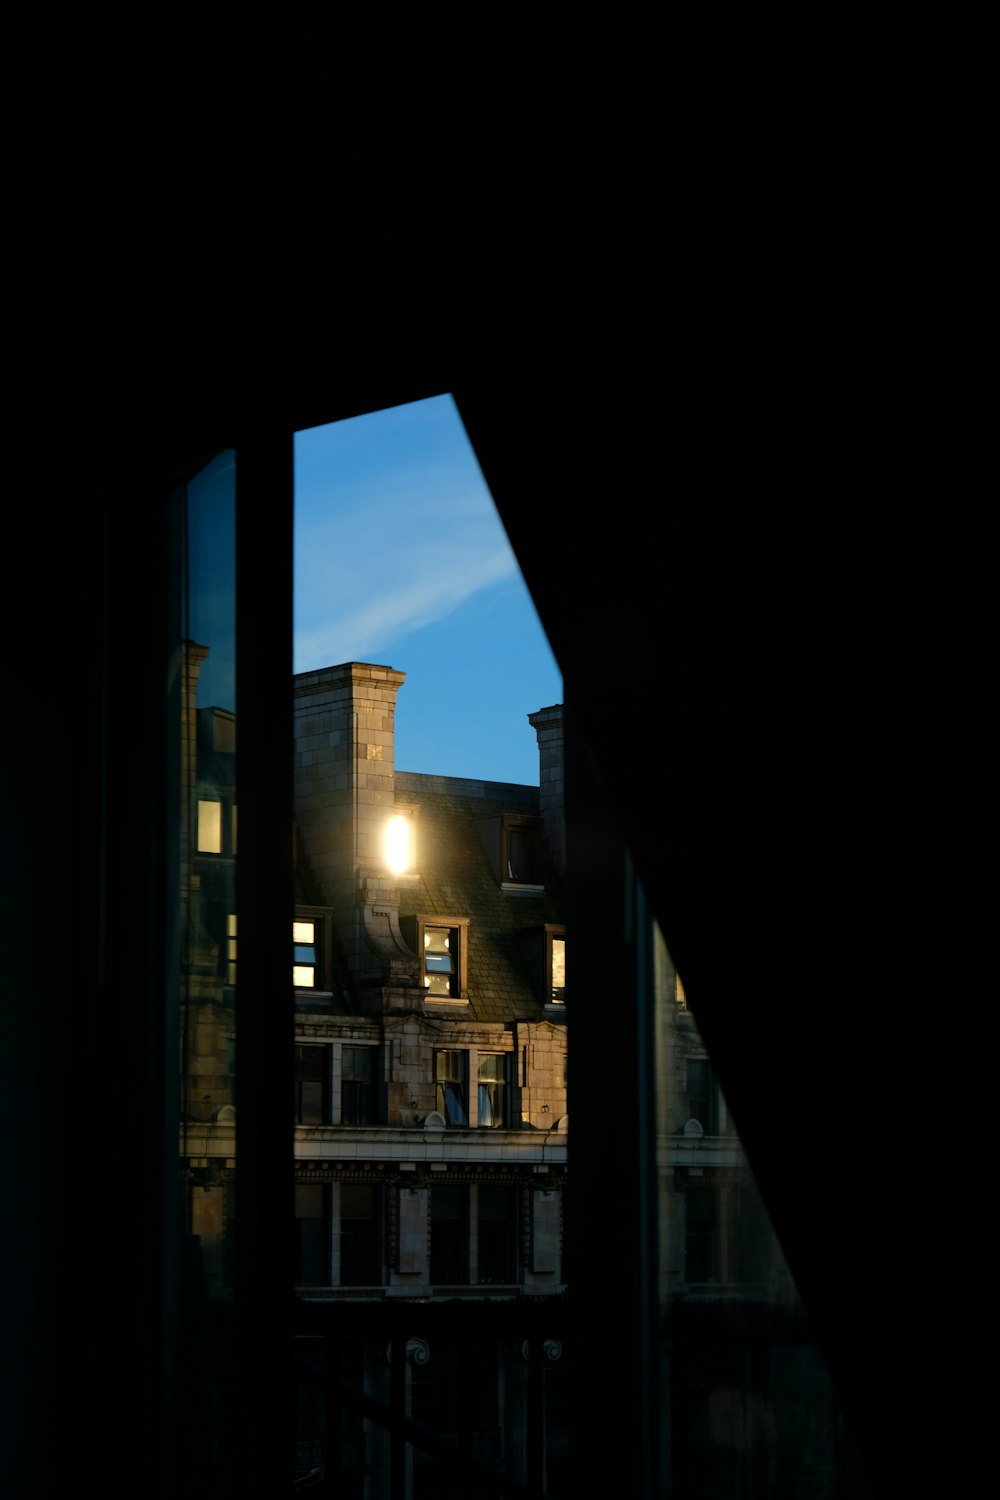 Foto Um reflexo de um edifício nas janelas de outro edifício – Imagem de  Dior grátis no Unsplash